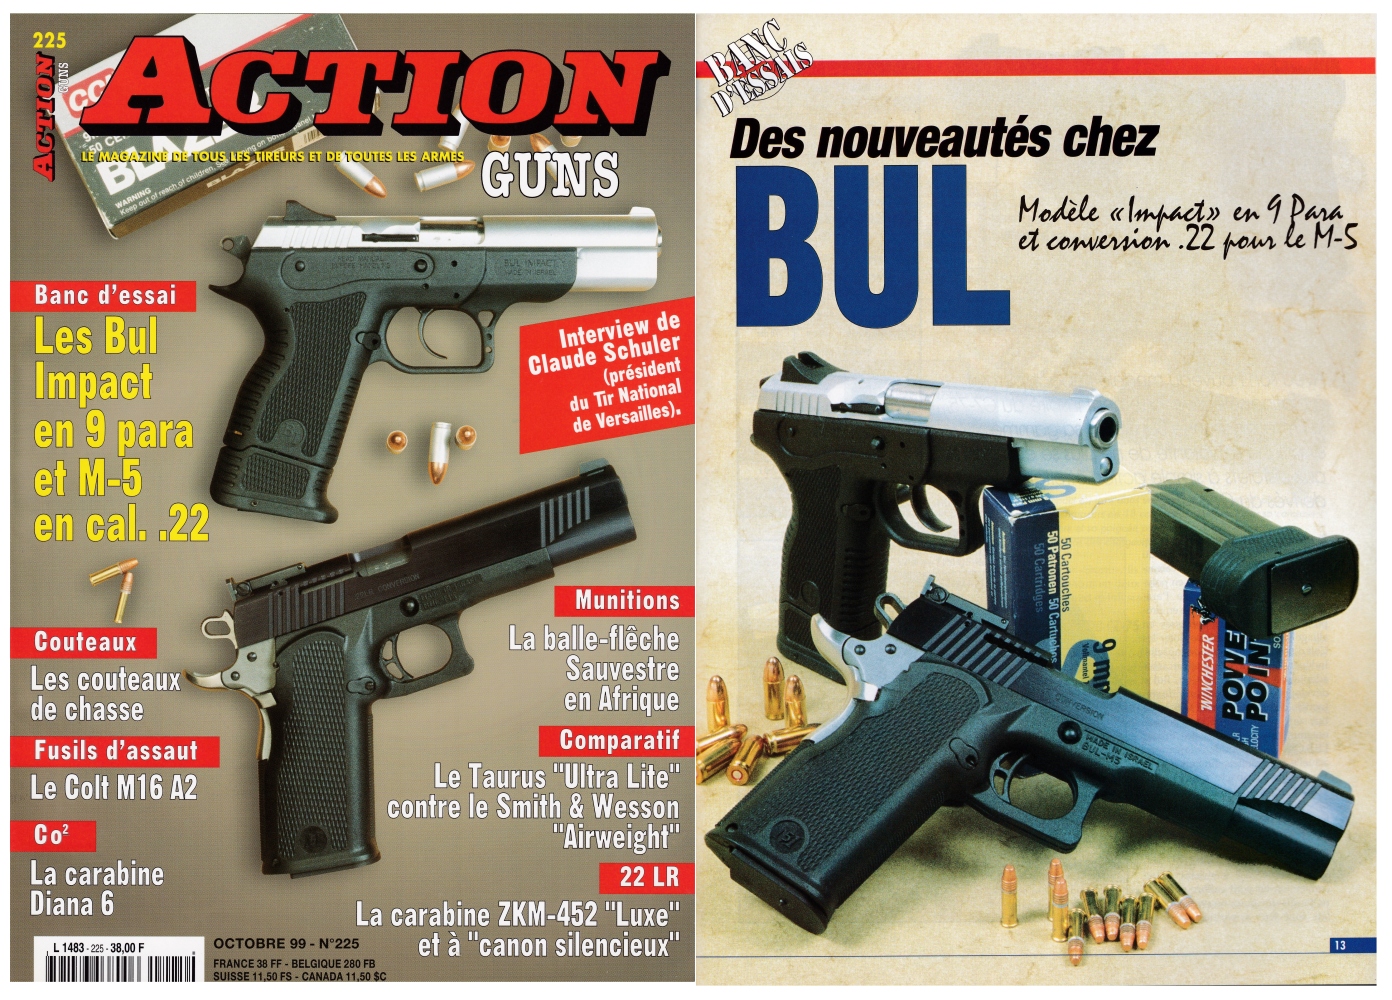 Le banc d’essai des pistolets Bul « Impact » en calibre 9 Para et Bul M-5 avec conversion .22 a été publié sur 8 pages dans le magazine Action Guns n°225 (octobre 1999) 